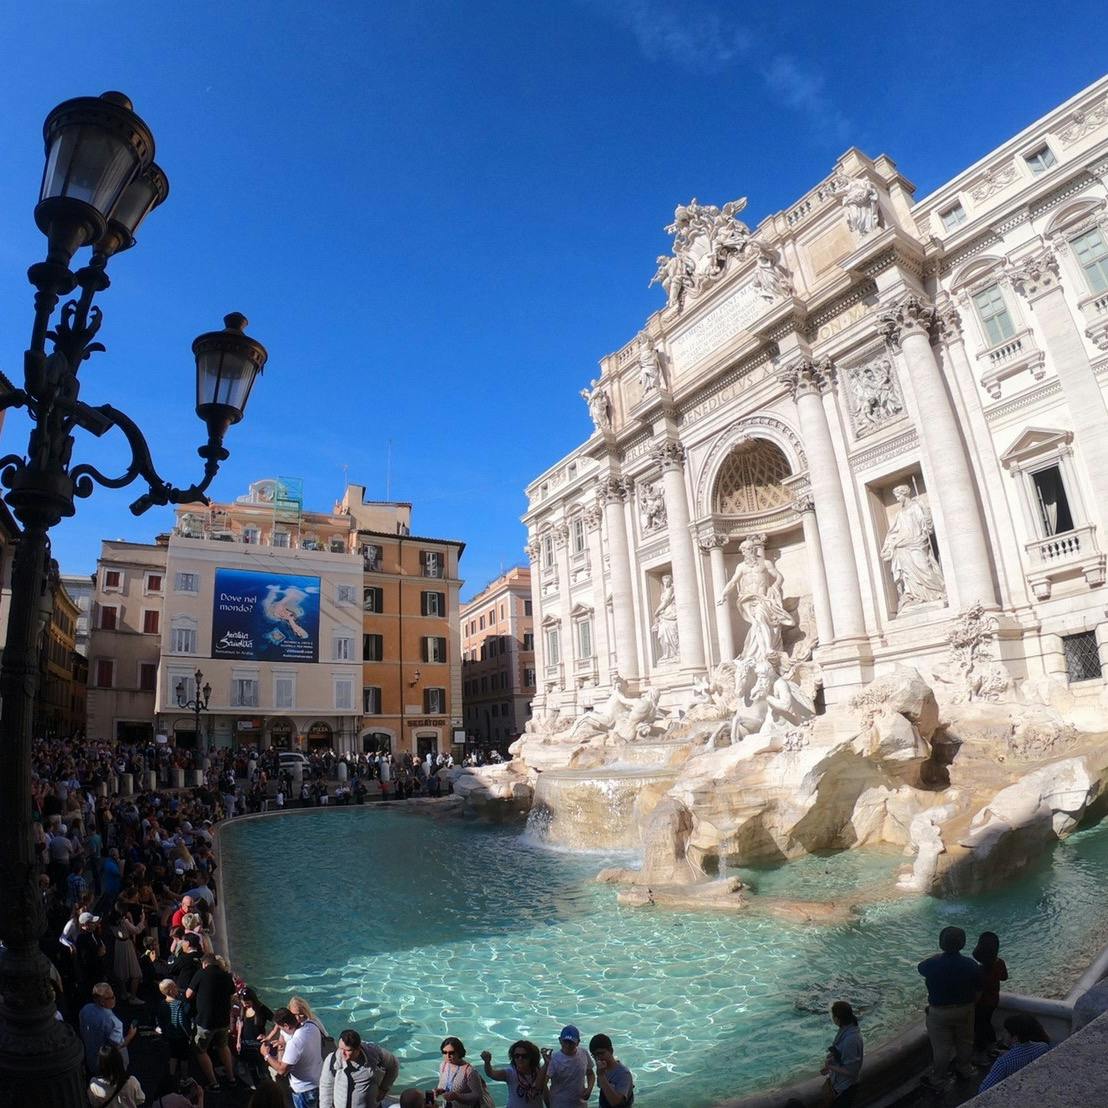 トレビの泉 Fontana Di Trevi の投稿写真 感想 みどころ イタリア ローマトレビの泉 平日の午前中でもかなりの人 トリップノート